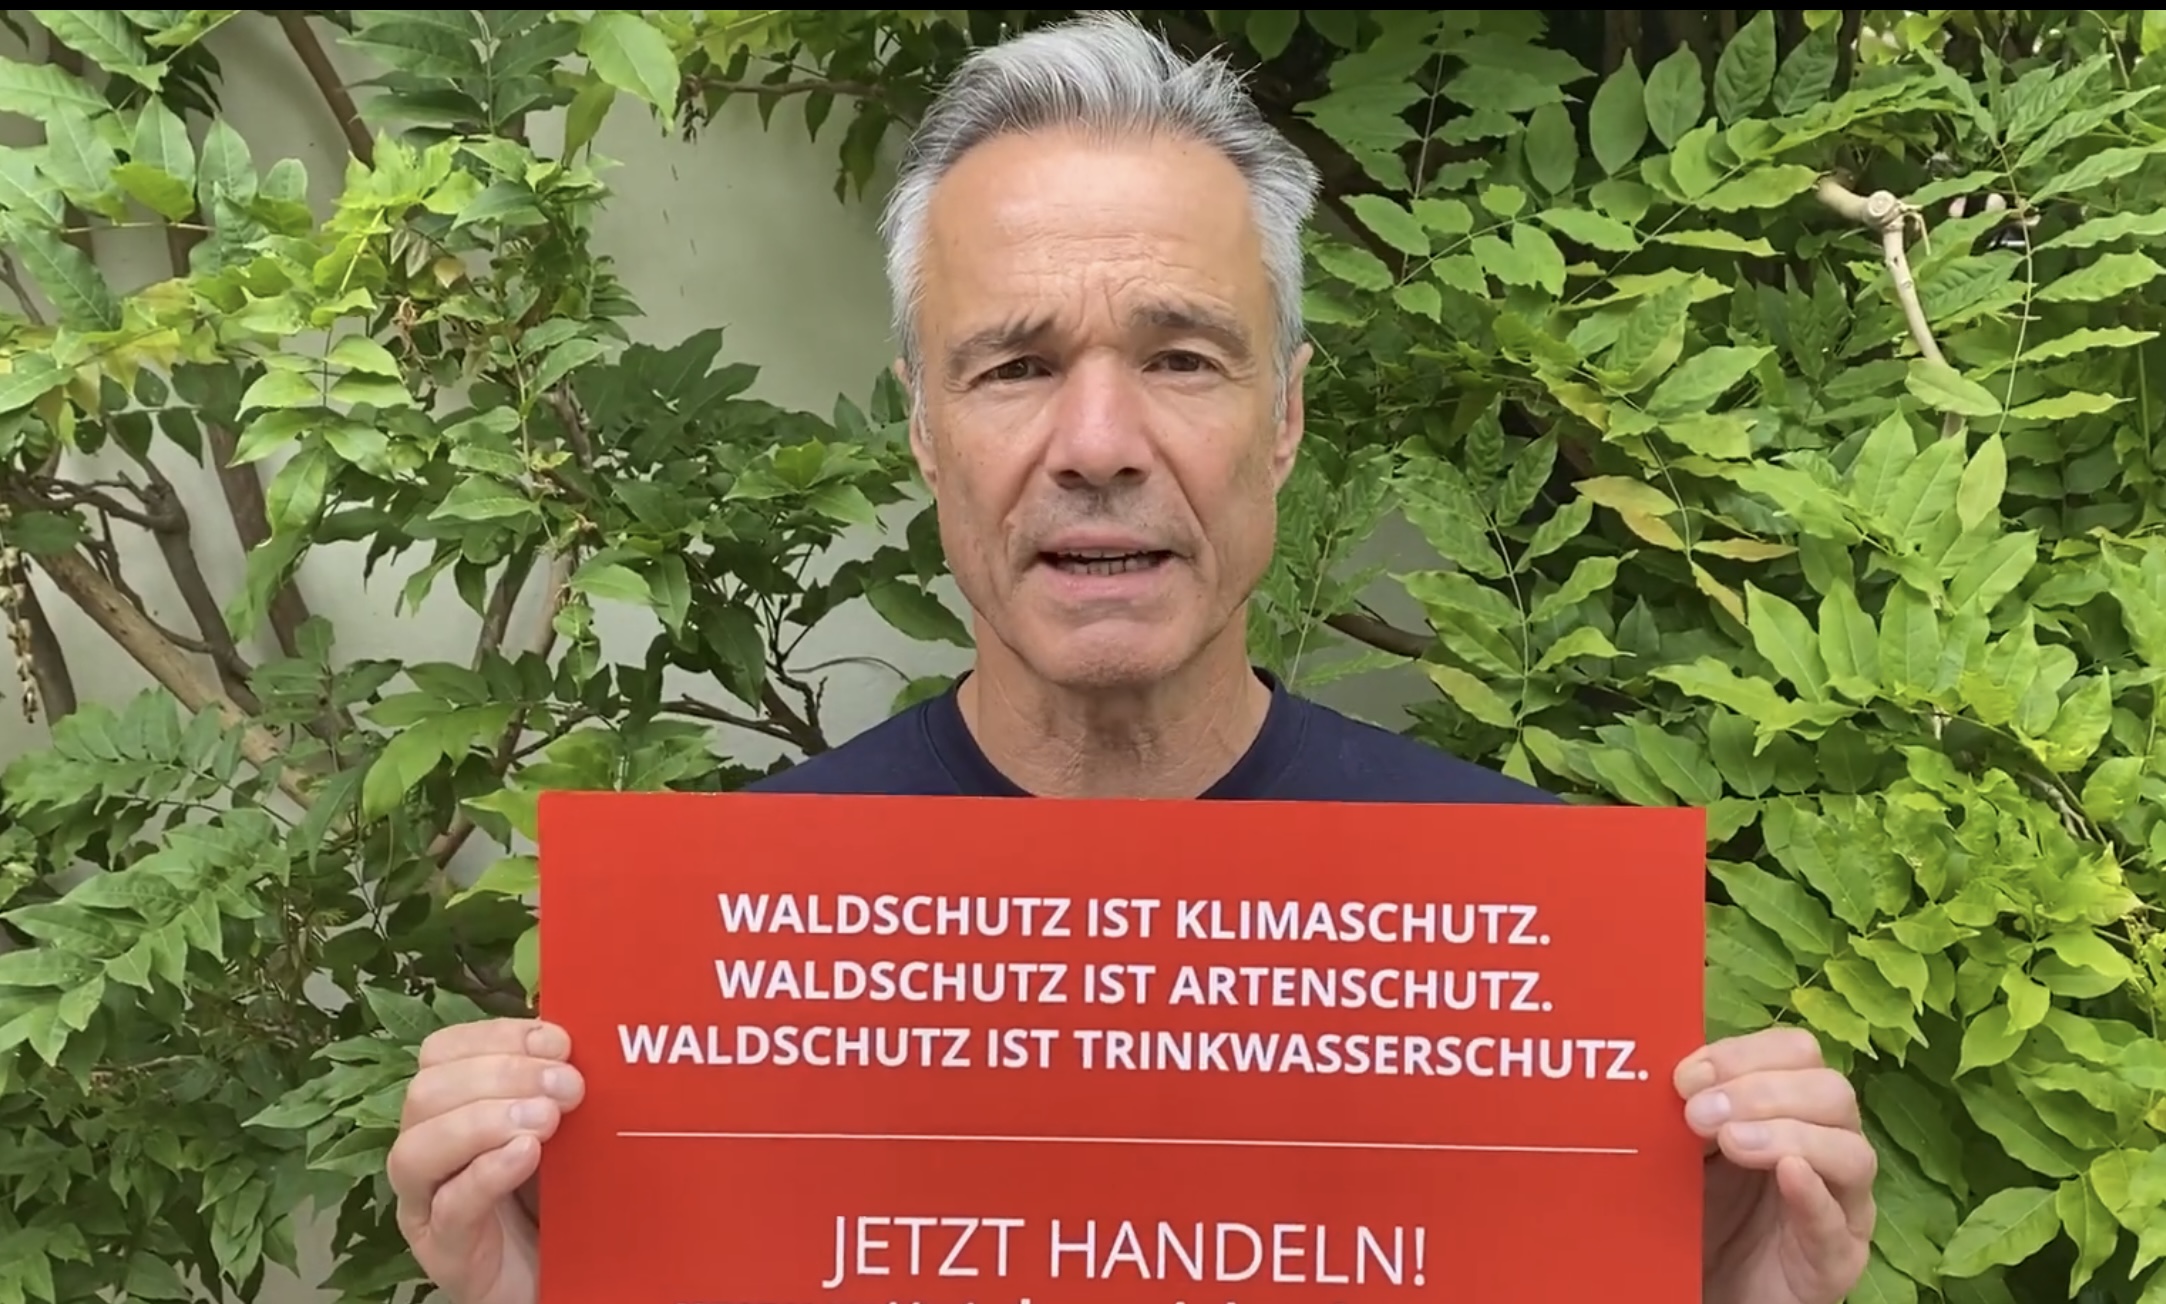 Lasst unsere Wälder in Ruhe! – fordert auch Hannes Jaennicke.